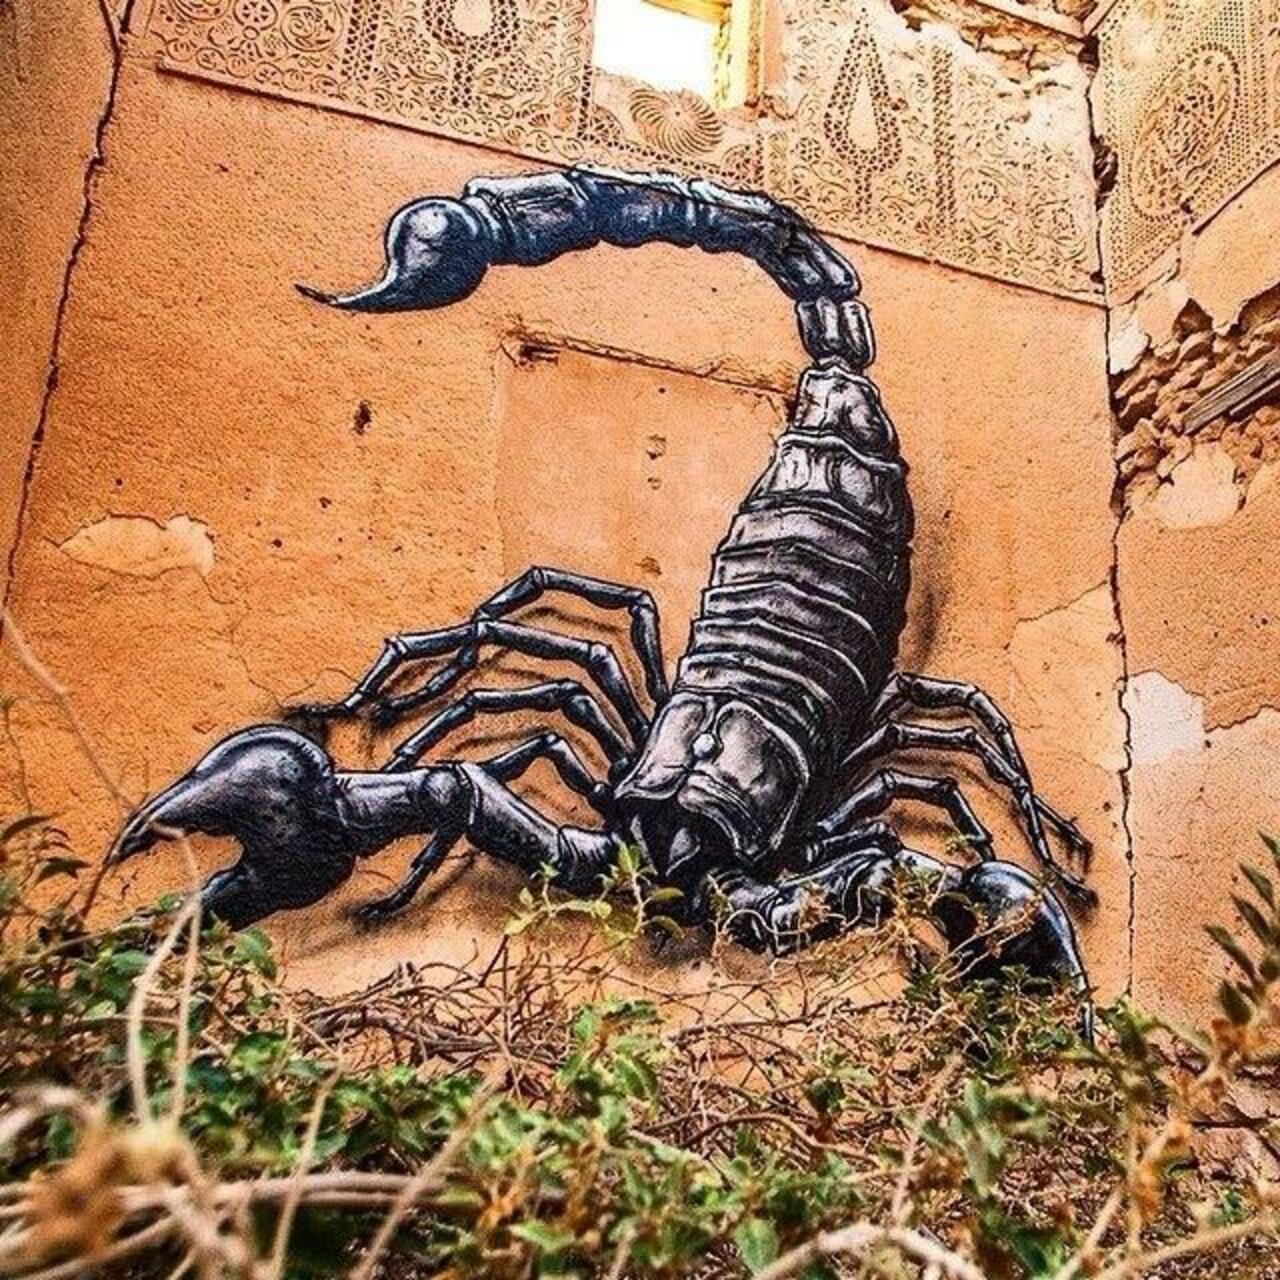 RT @designopinion: Artist ROA new Scorpion Street Art mural in Djerba, Tunisia #art #graffiti #nature #streetart http://t.co/Ktsa2ud4Ro